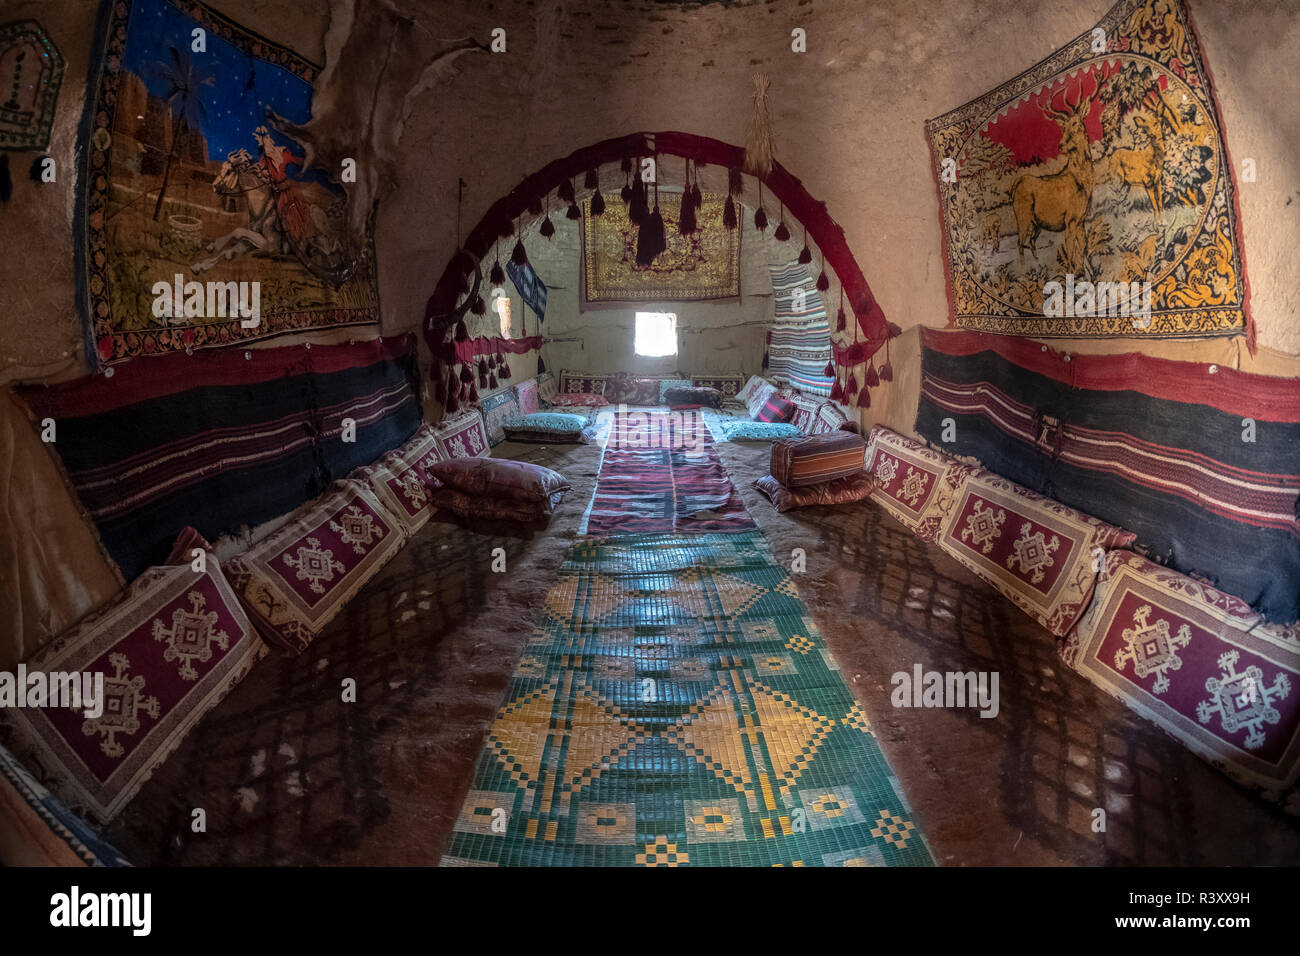 Sanliurfa, Turchia - 08 Settembre 2018: vista interna di un Harran House di Sanliurfa, Turchia il 8 settembre 2018. Foto Stock